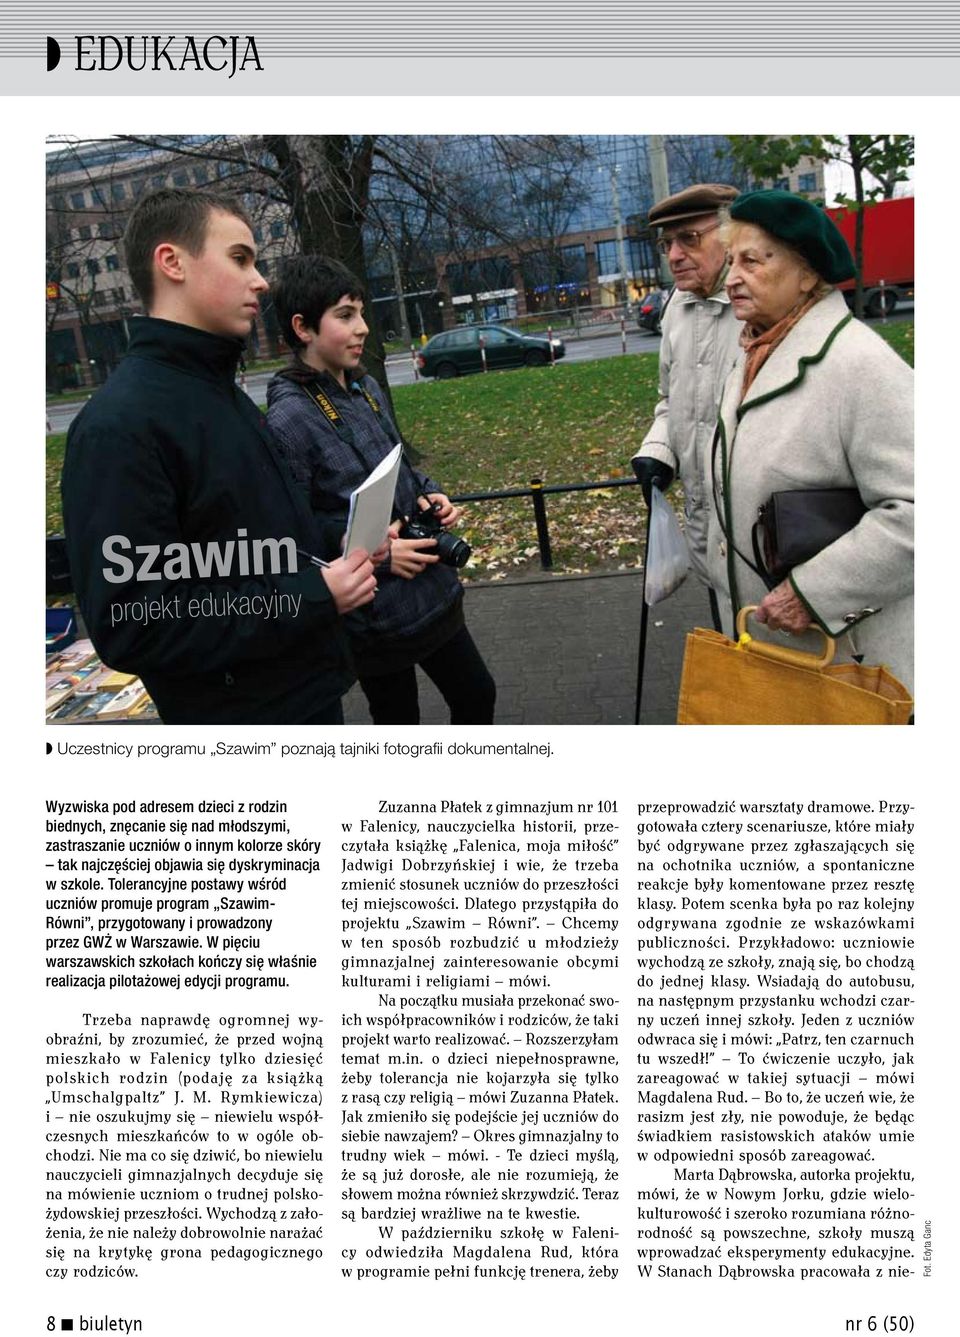 Tolerancyjne postawy wśród uczniów promuje program Szawim- Równi, przygotowany i prowadzony przez GWŻ w Warszawie.